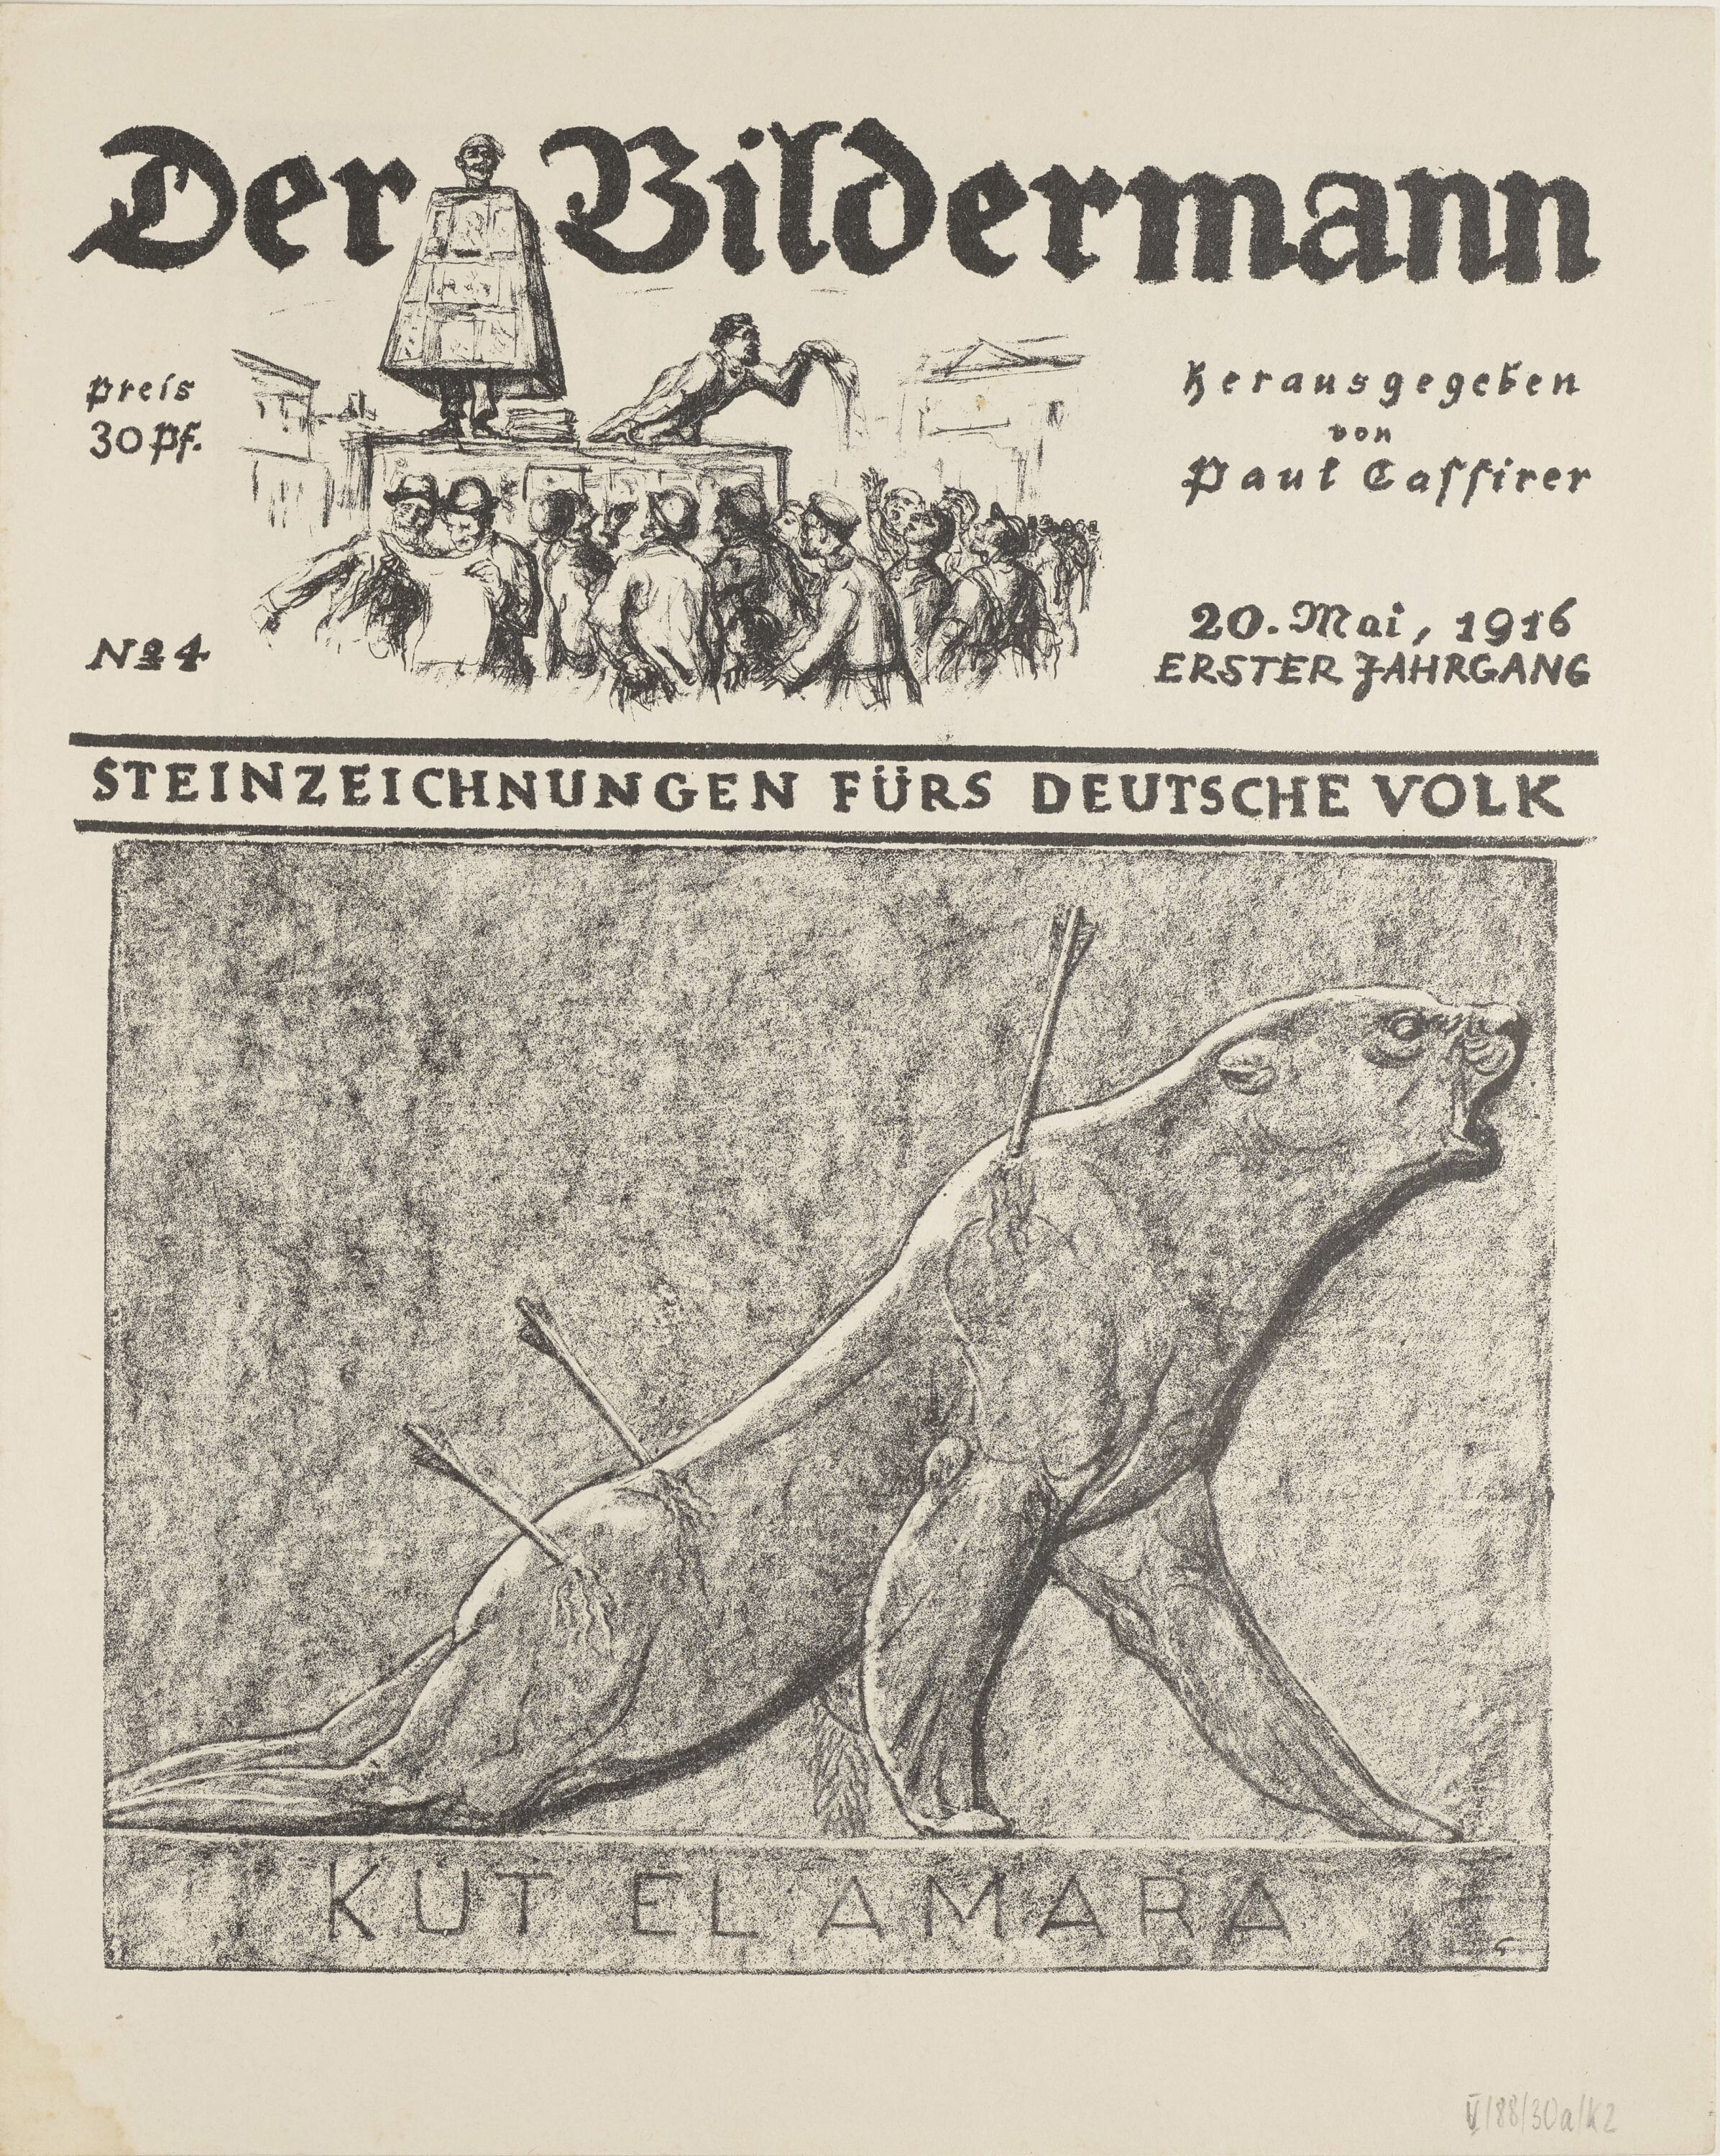 KUT EL AMARA, aus: Der Bildermann, Nr. 4, 20. Mai 1916 (KUNSTSAMMLUNGEN ZWICKAU Max-Pechstein-Museum RR-F)